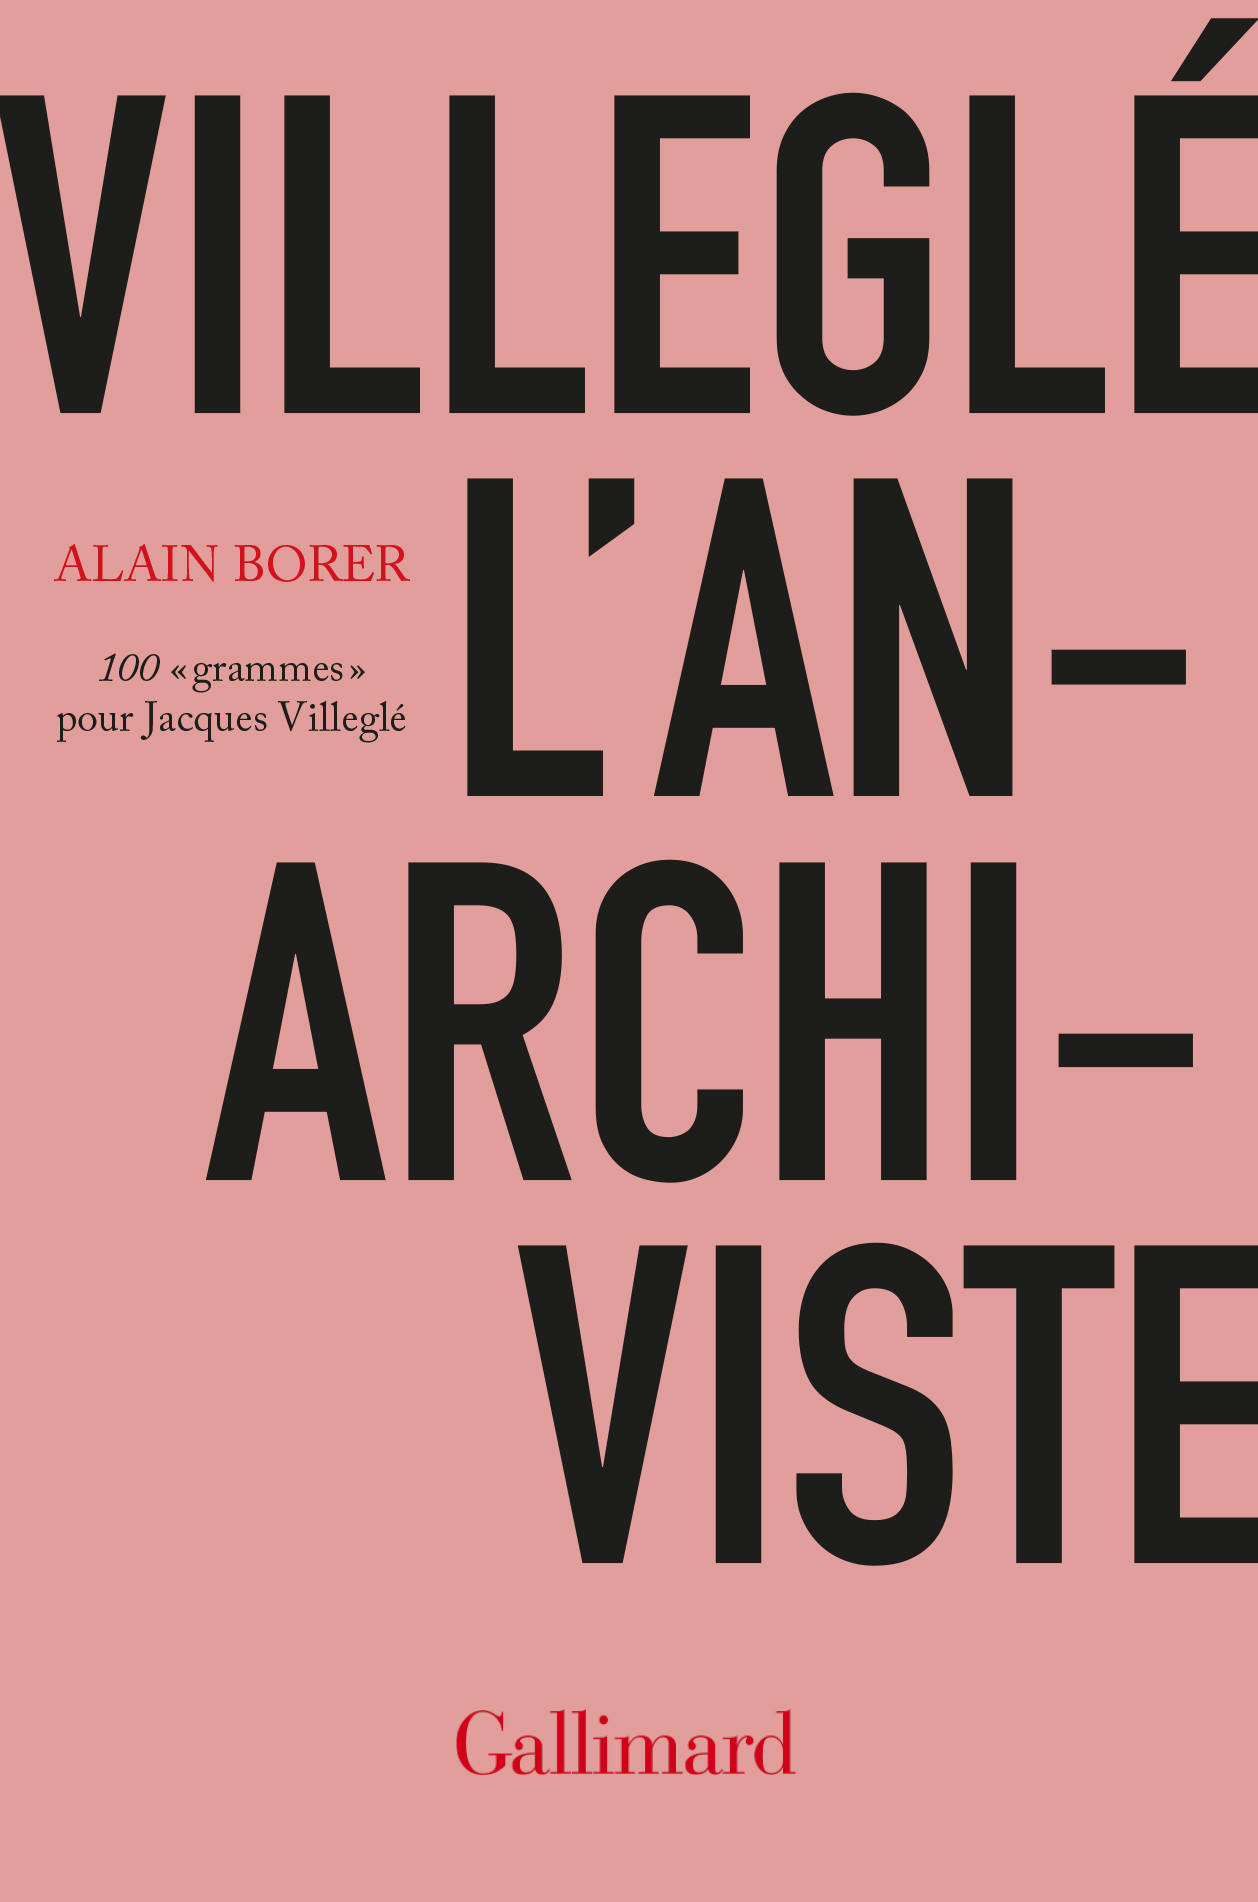 Villeglé l'anarchiviste, 100 "grammes" pour Jacques Villeglé (9782072873010-front-cover)